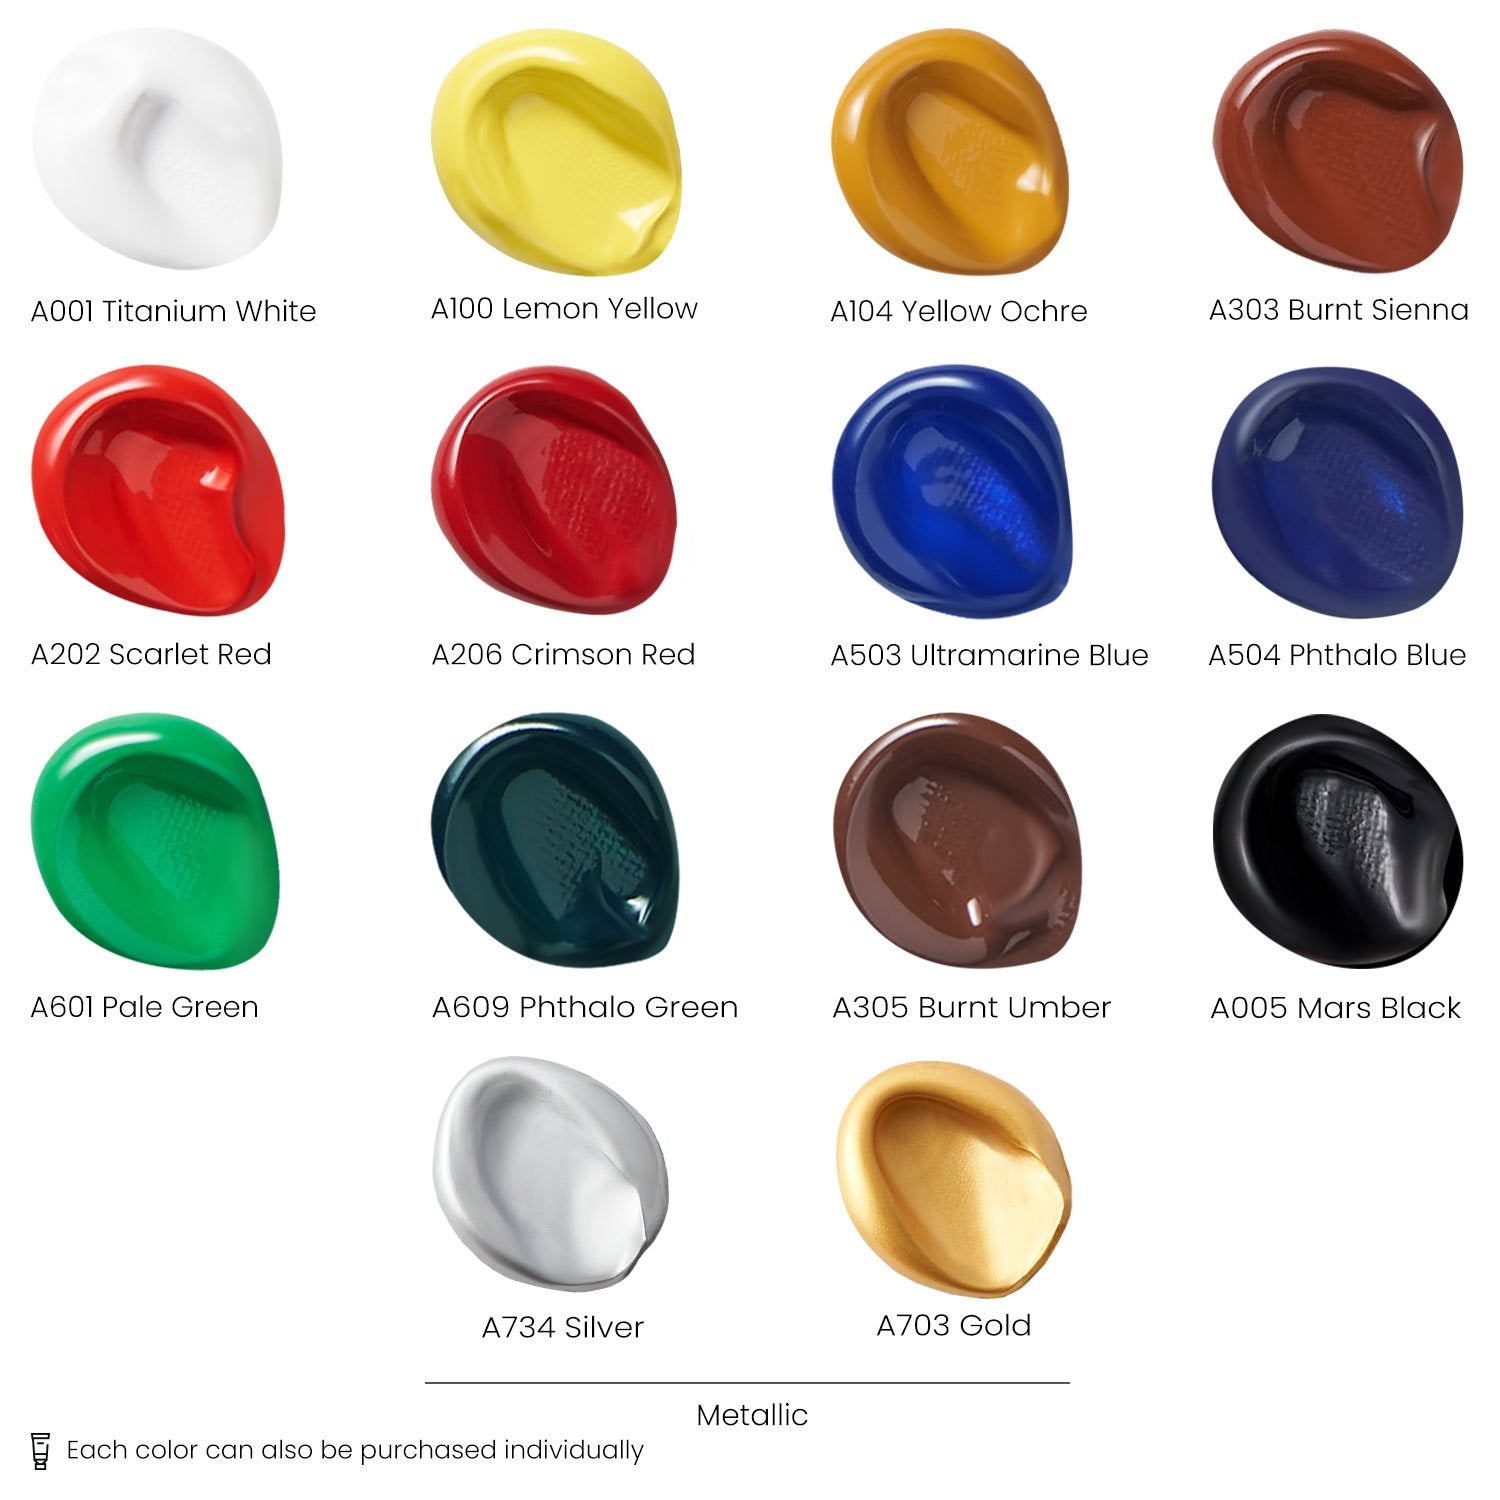 Premium Acrylic Paint Bottles Art Set, 18 Colors – Varieties Hub Co.